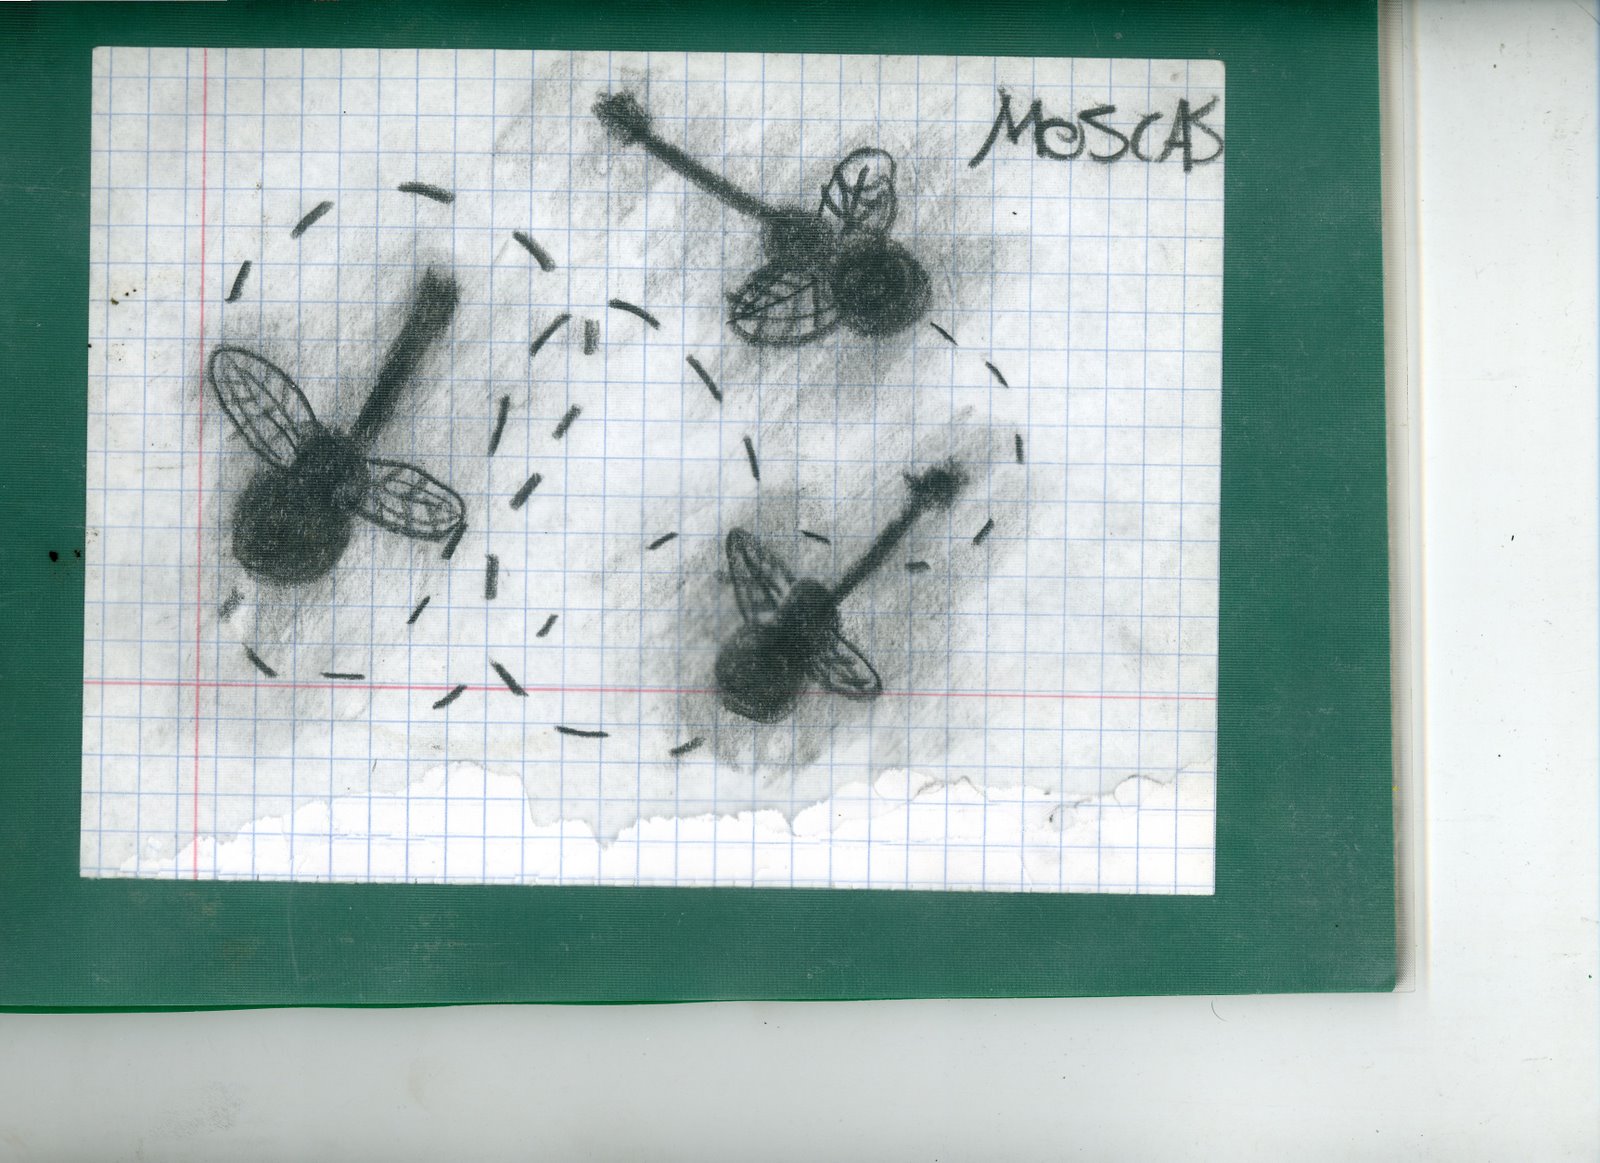 [moscas.jpg]